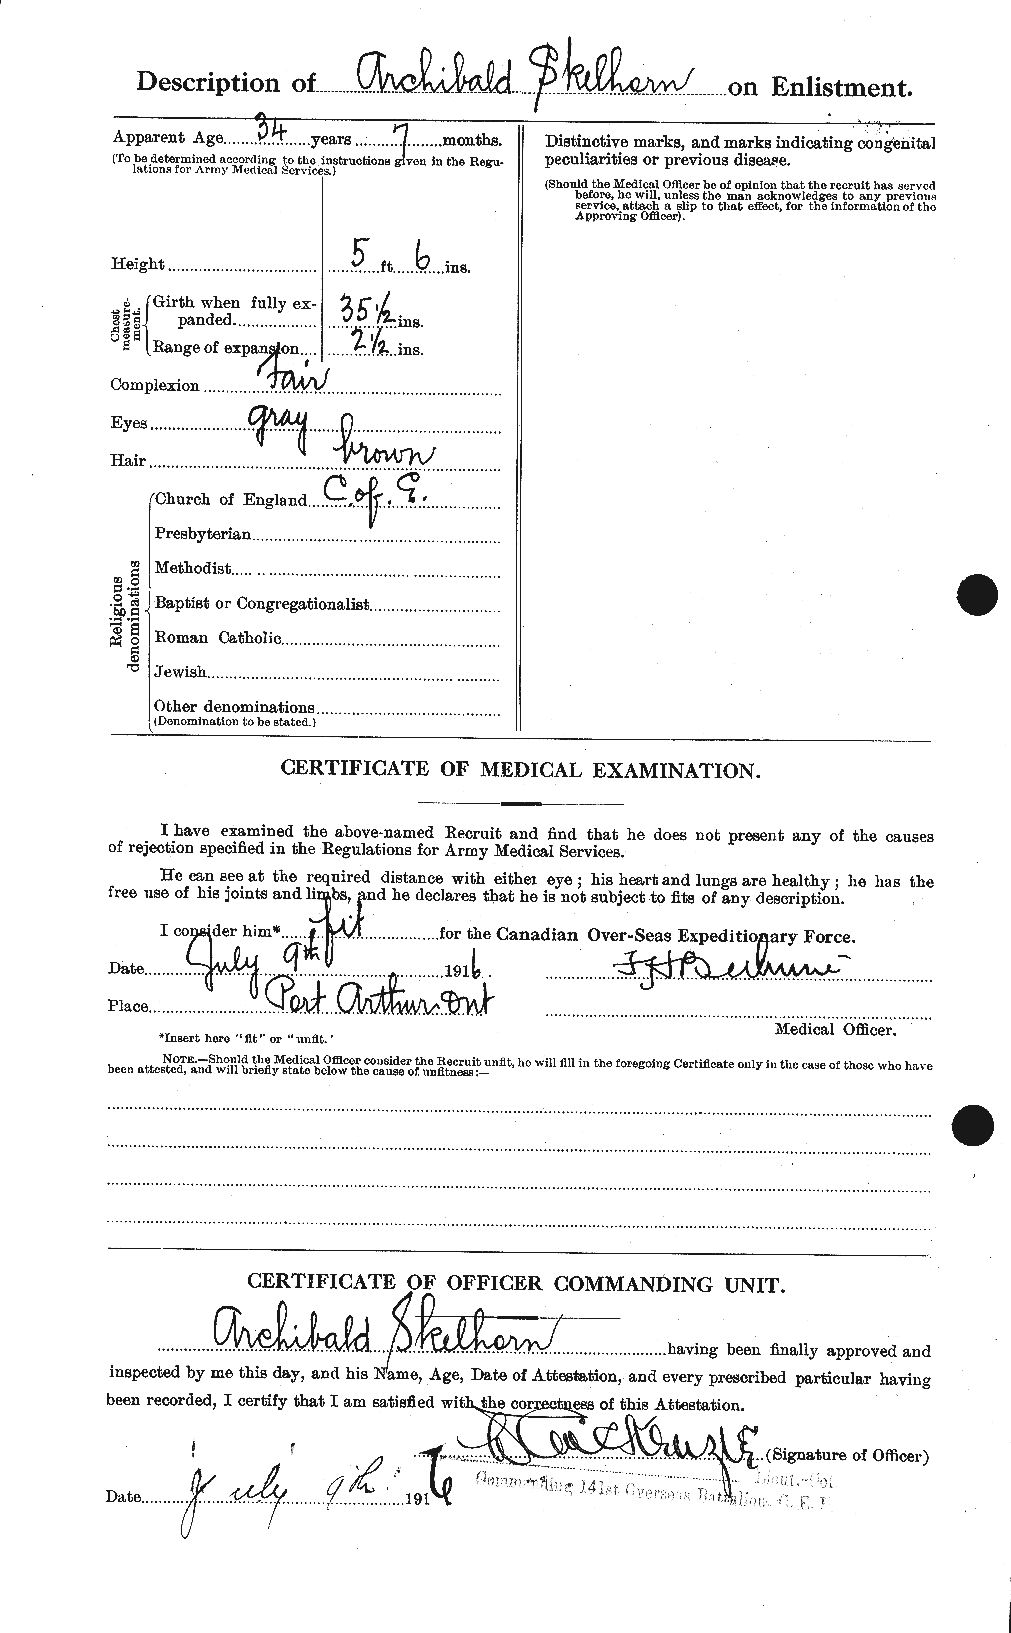 Dossiers du Personnel de la Première Guerre mondiale - CEC 100483b